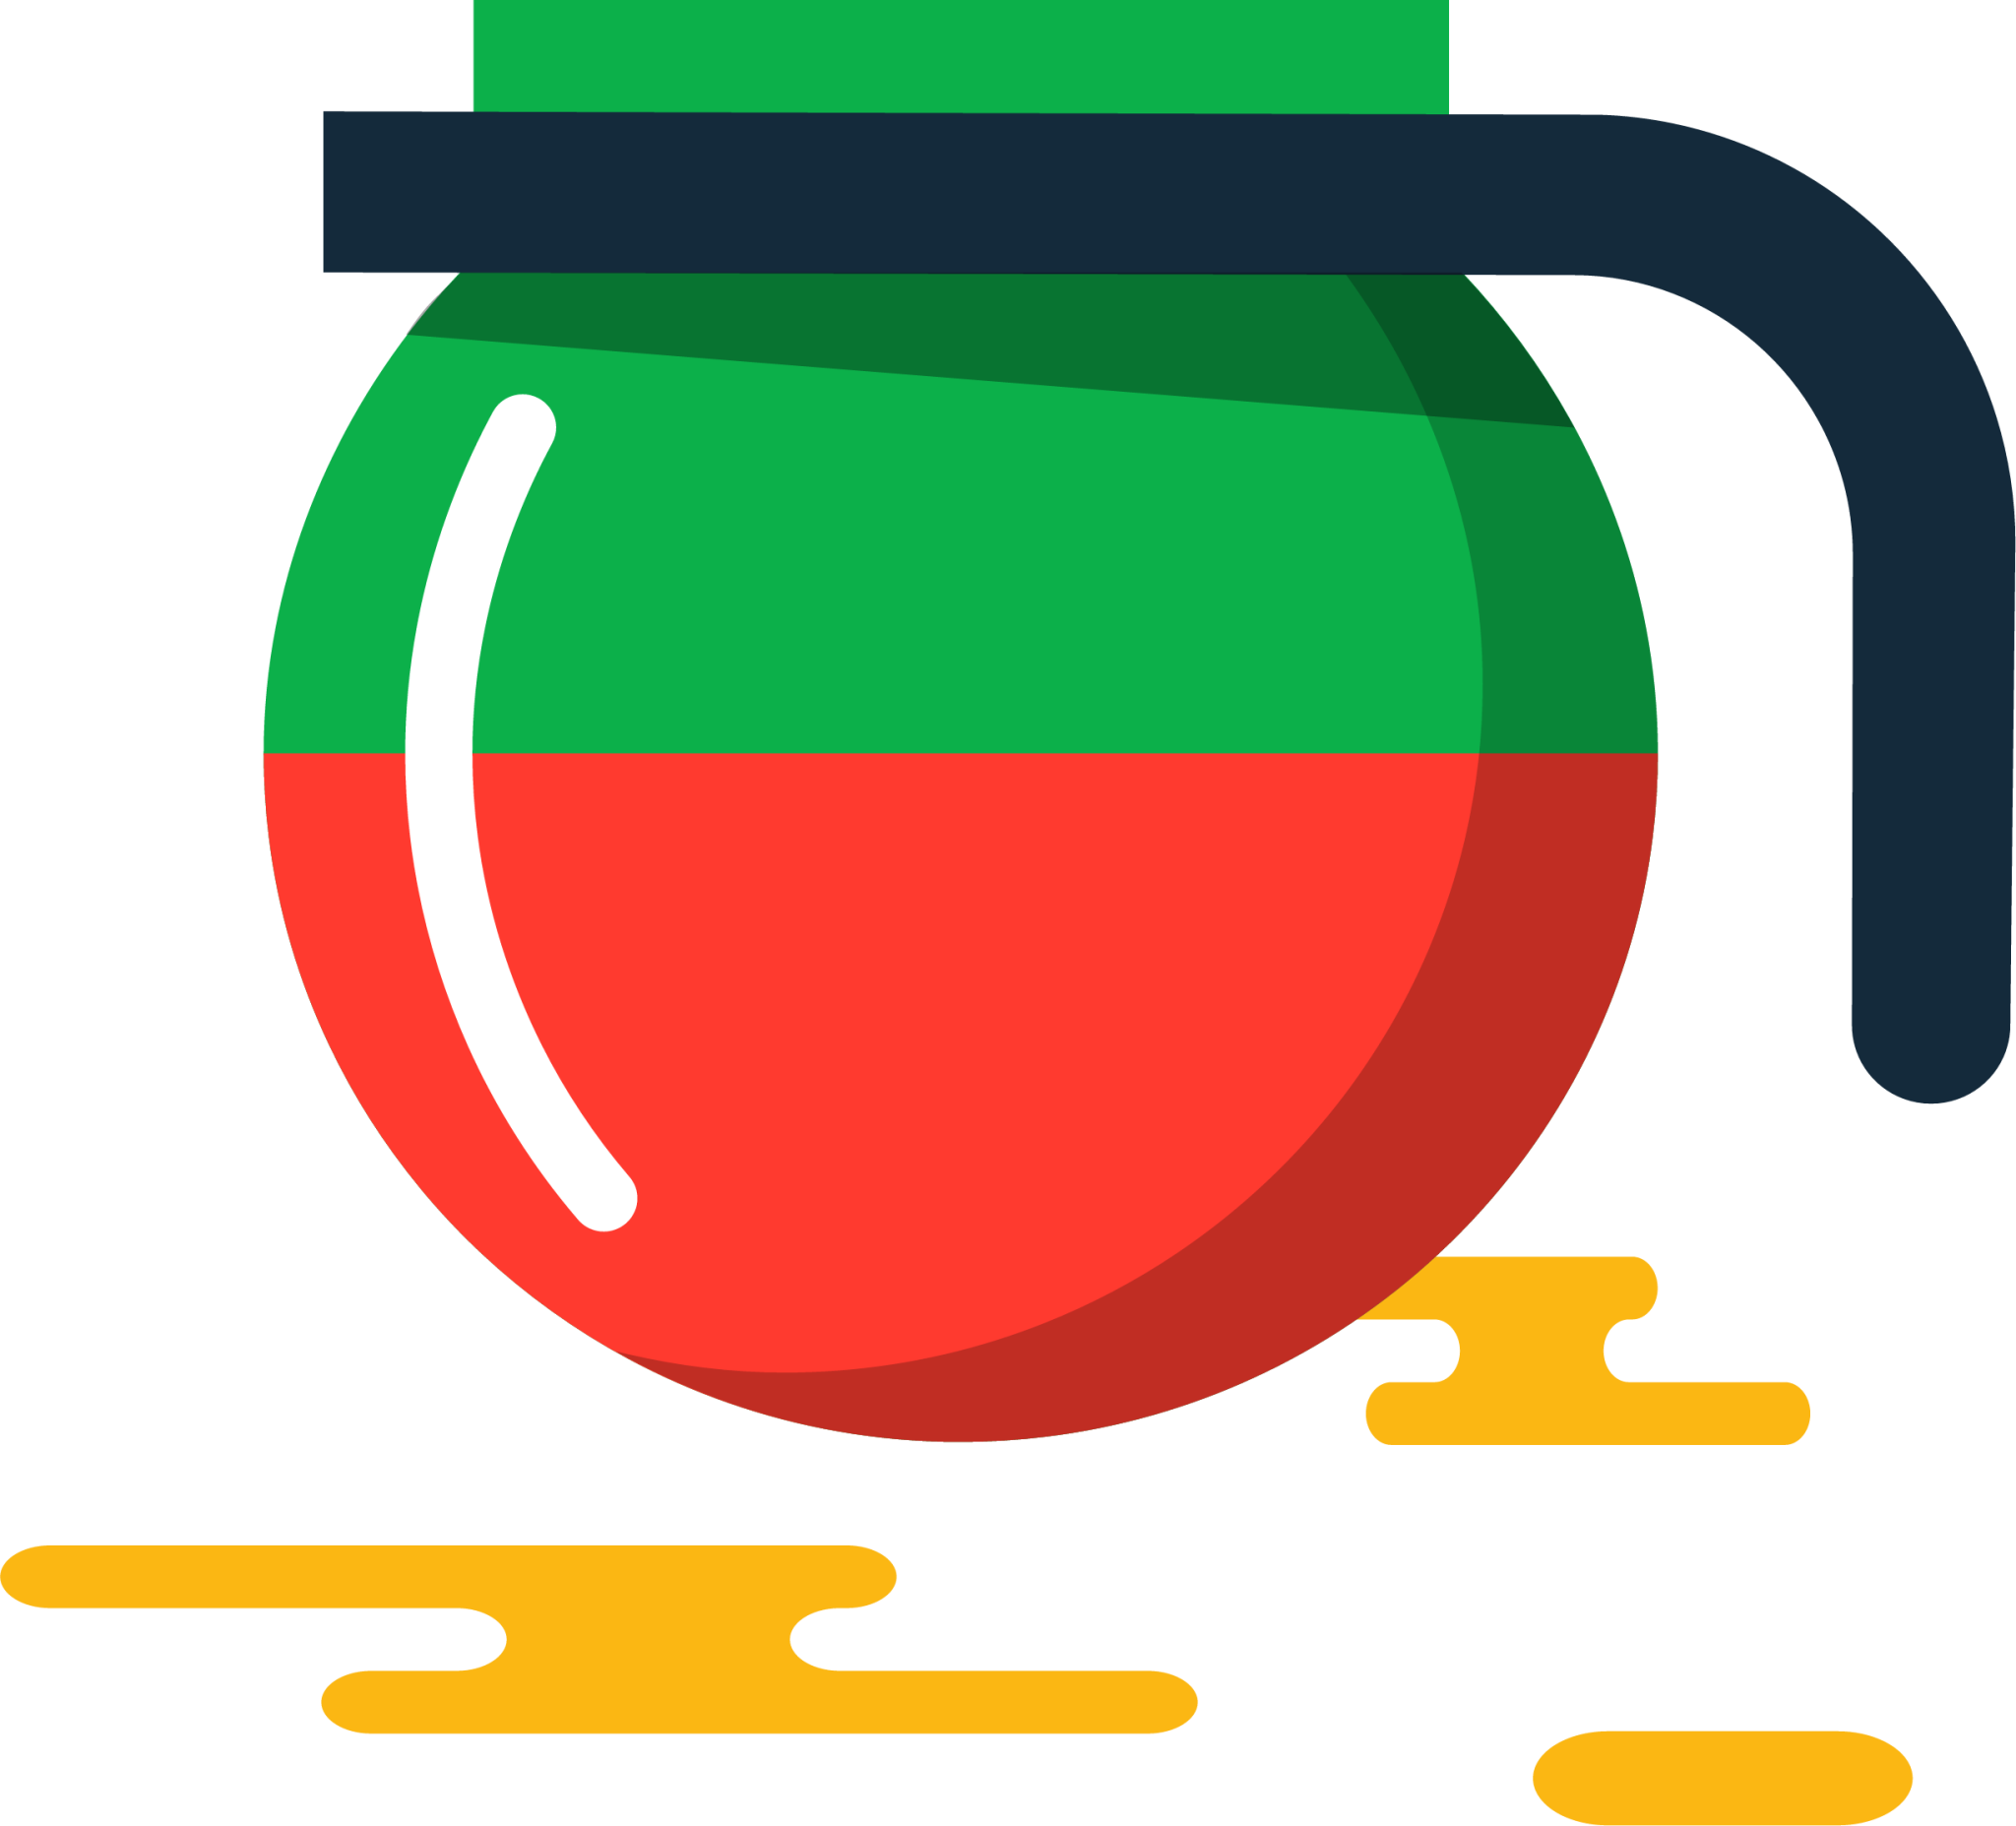 juice jar illustration